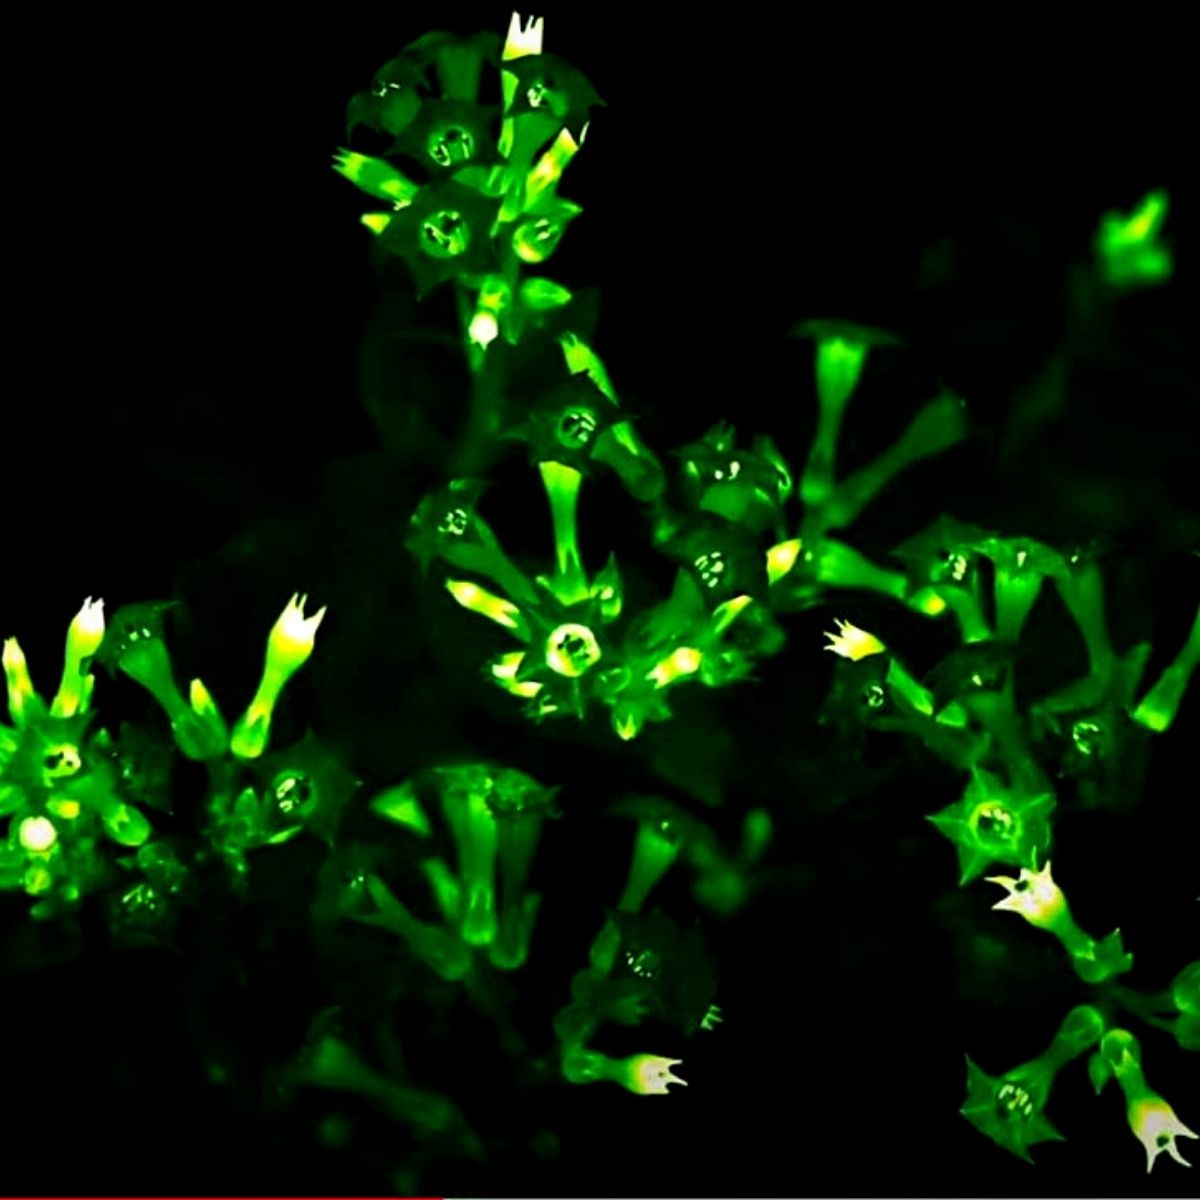 Light Bio’s Bioluminescent Firefly Petunias That Glow in the Dark